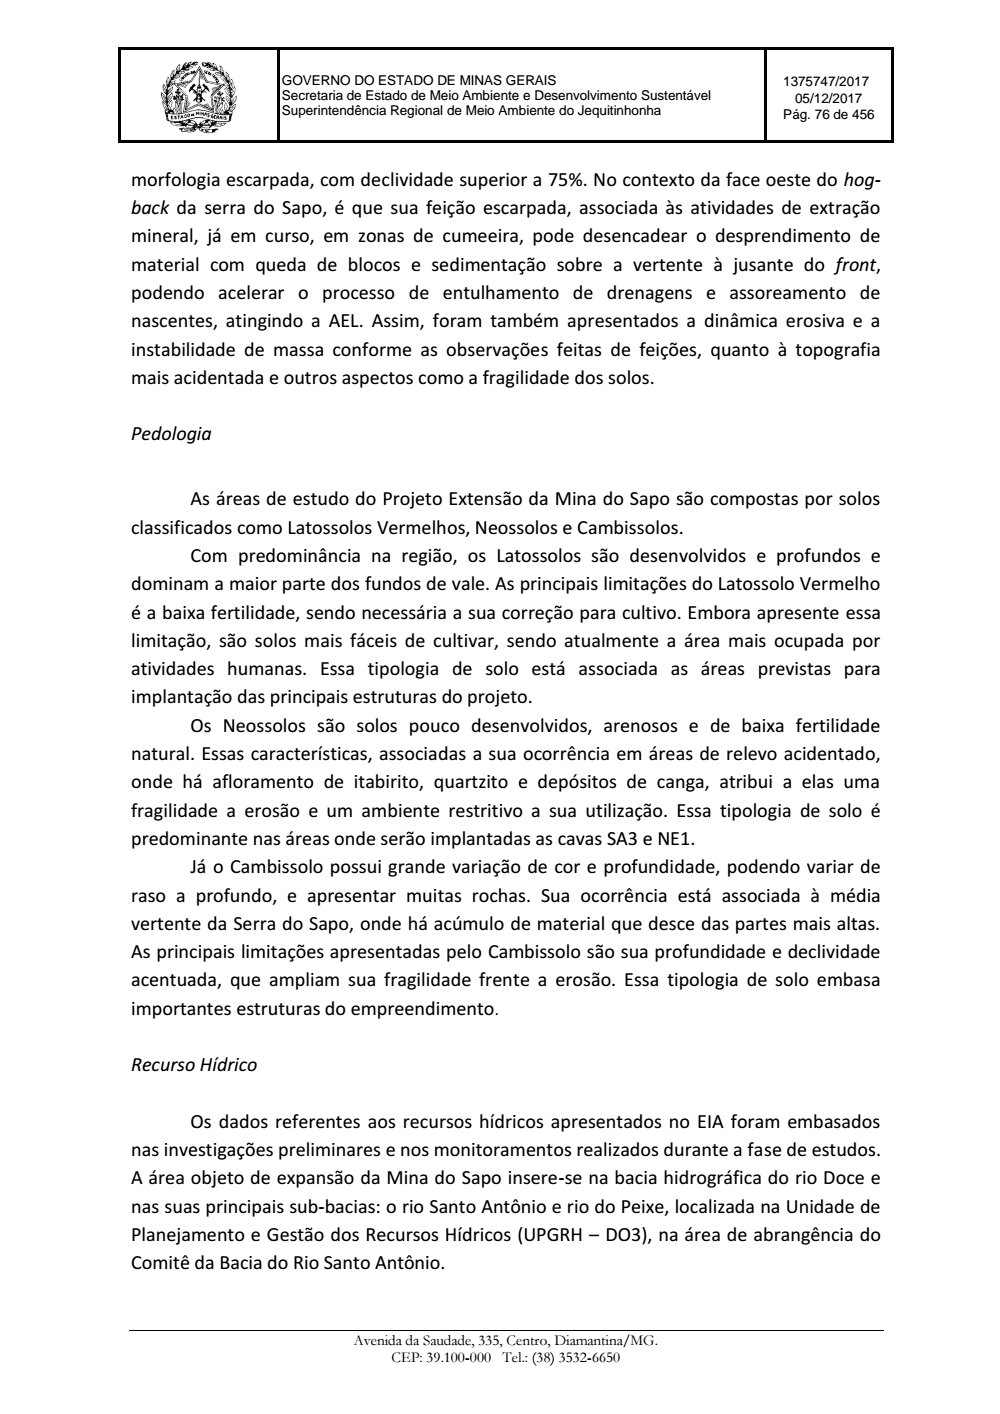 Page 76 from Parecer único da Secretaria de estado de Meio Ambiente e Desenvolvimento Sustentável (SEMAD)